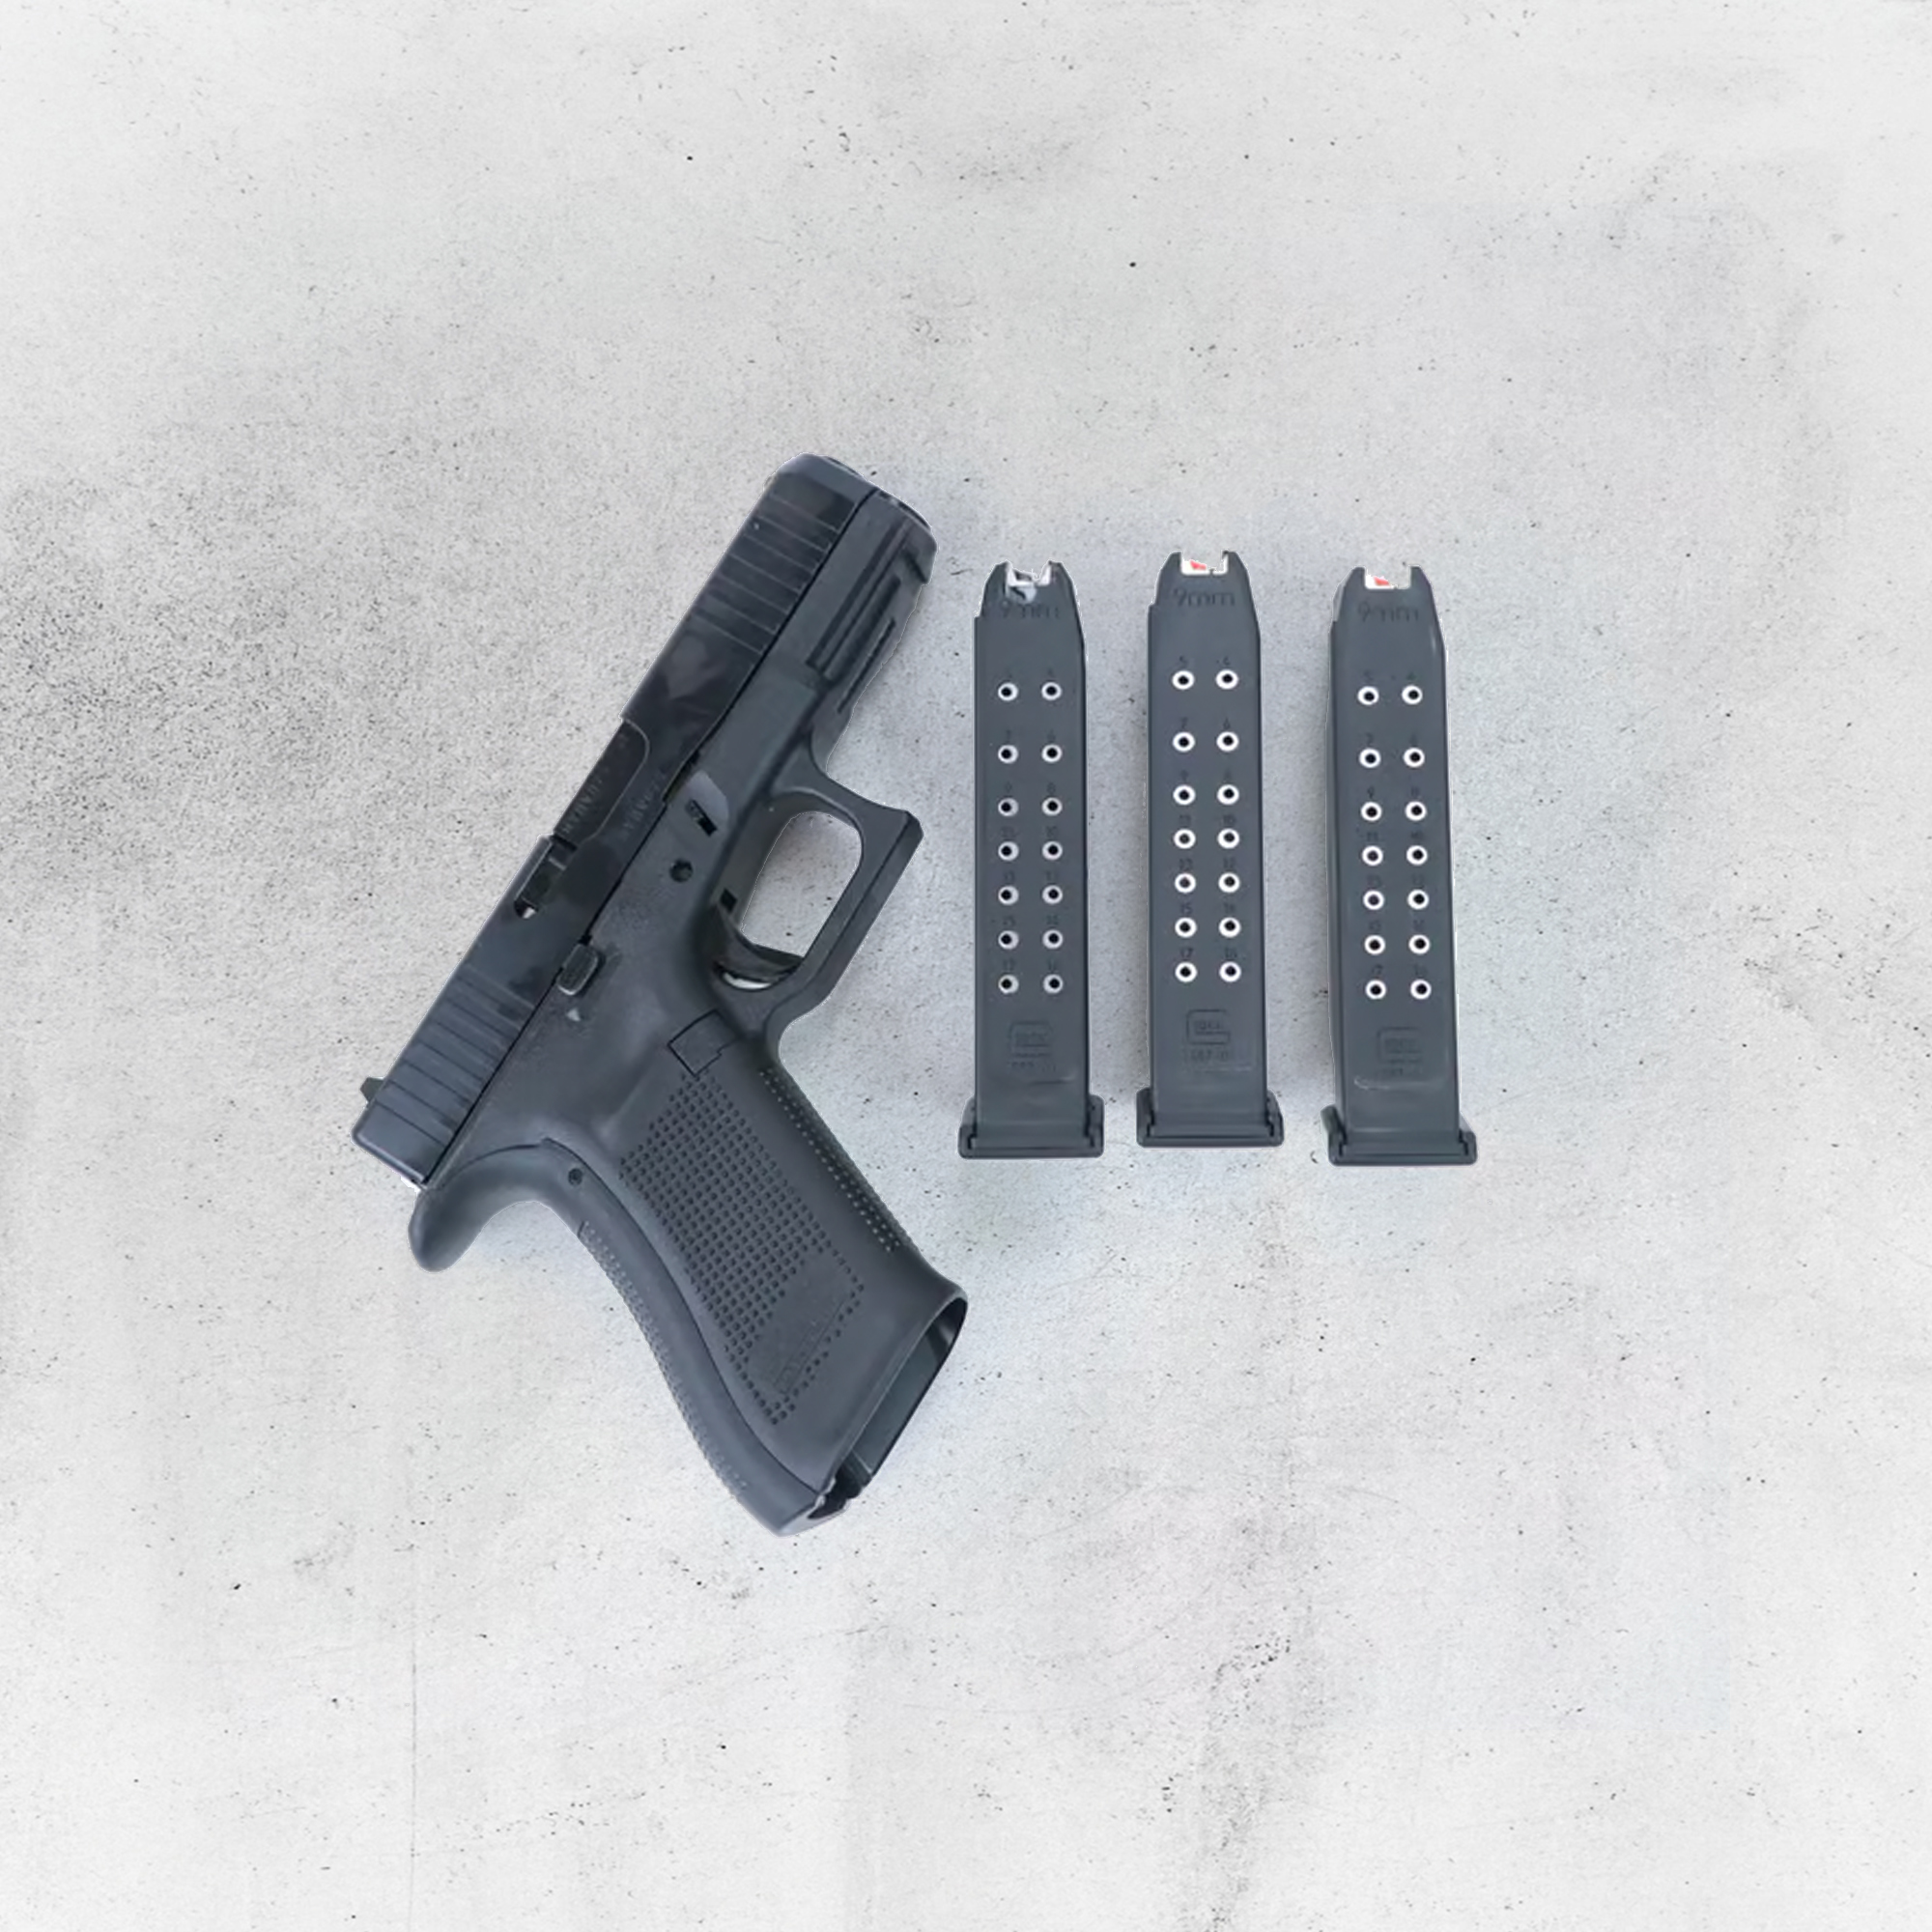 Size & Capacity: Glock 19 vs 45